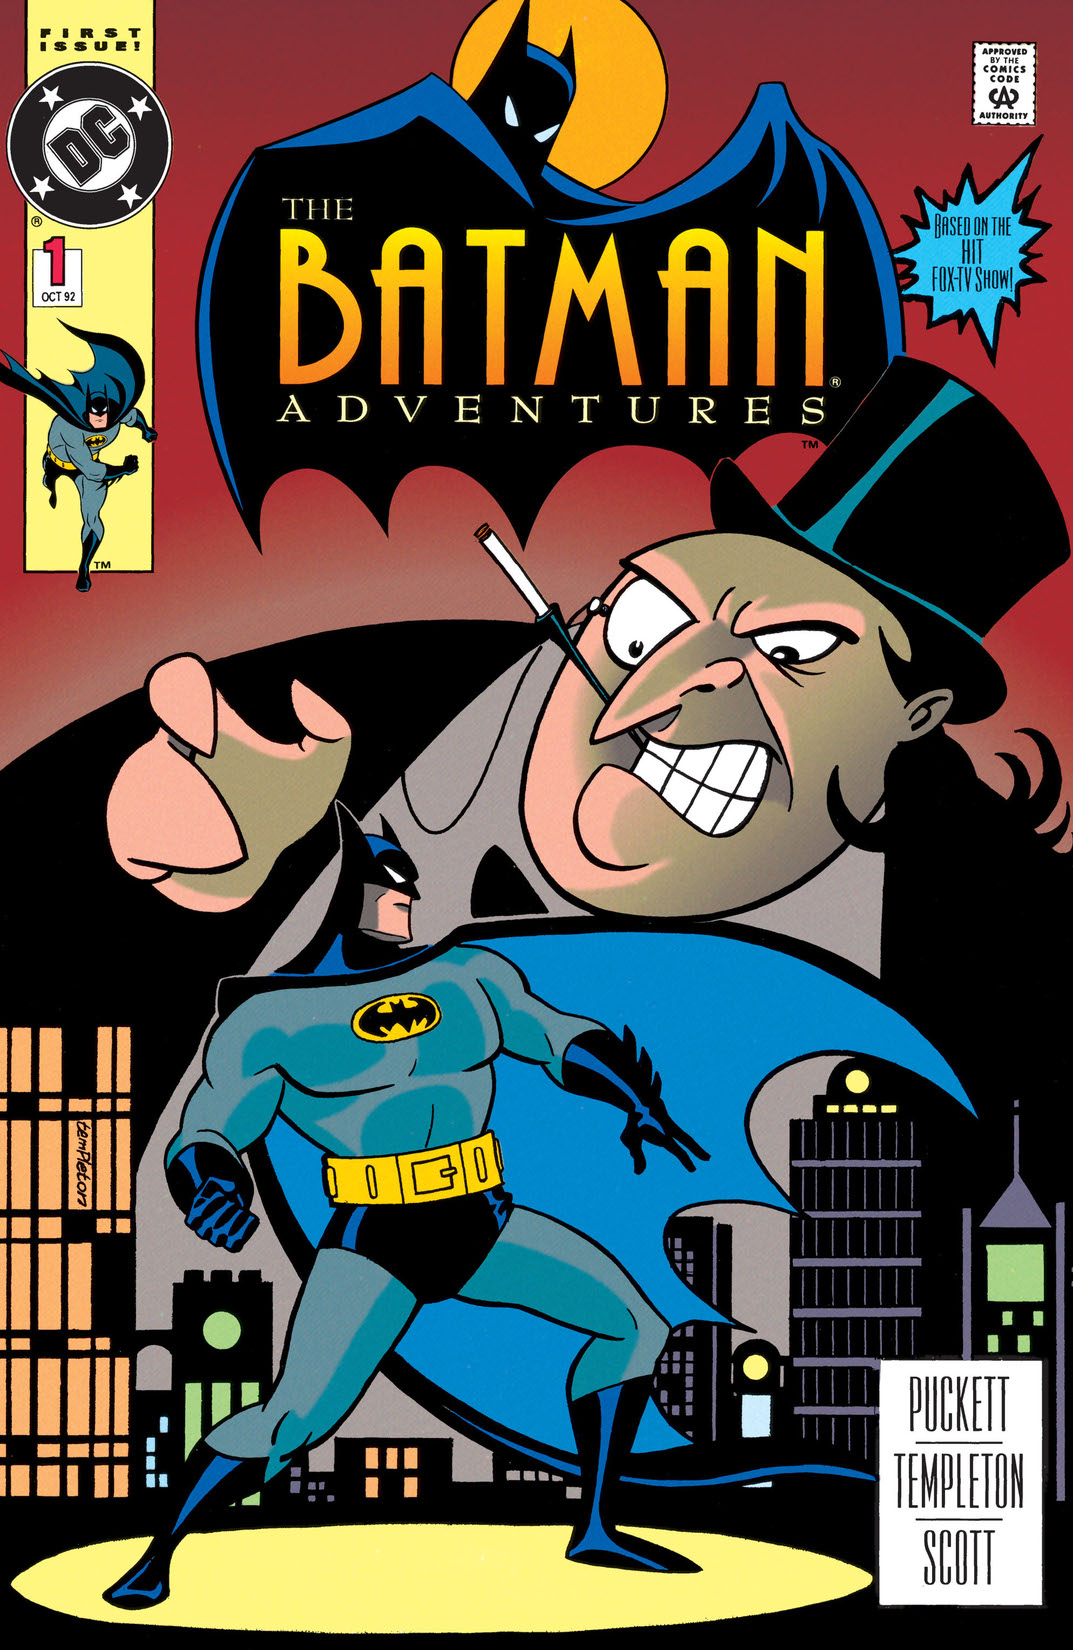 The Batman Adventures #1 preview images